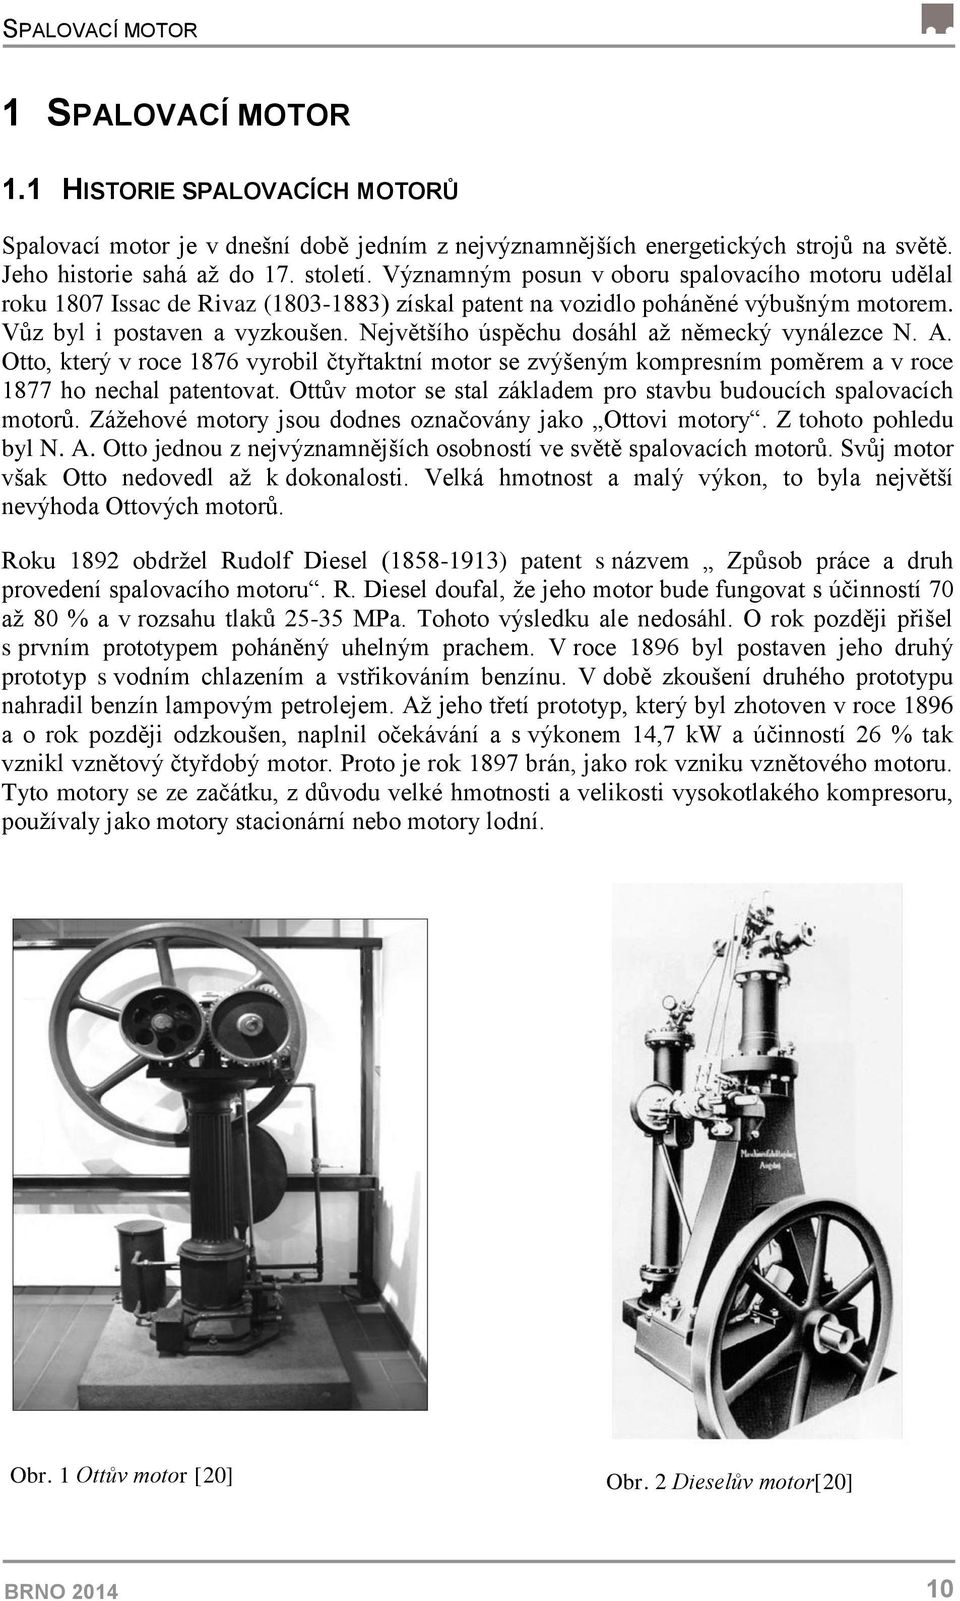 Největšího úspěchu dosáhl až německý vynálezce N. A. Otto, který v roce 1876 vyrobil čtyřtaktní motor se zvýšeným kompresním poměrem a v roce 1877 ho nechal patentovat.